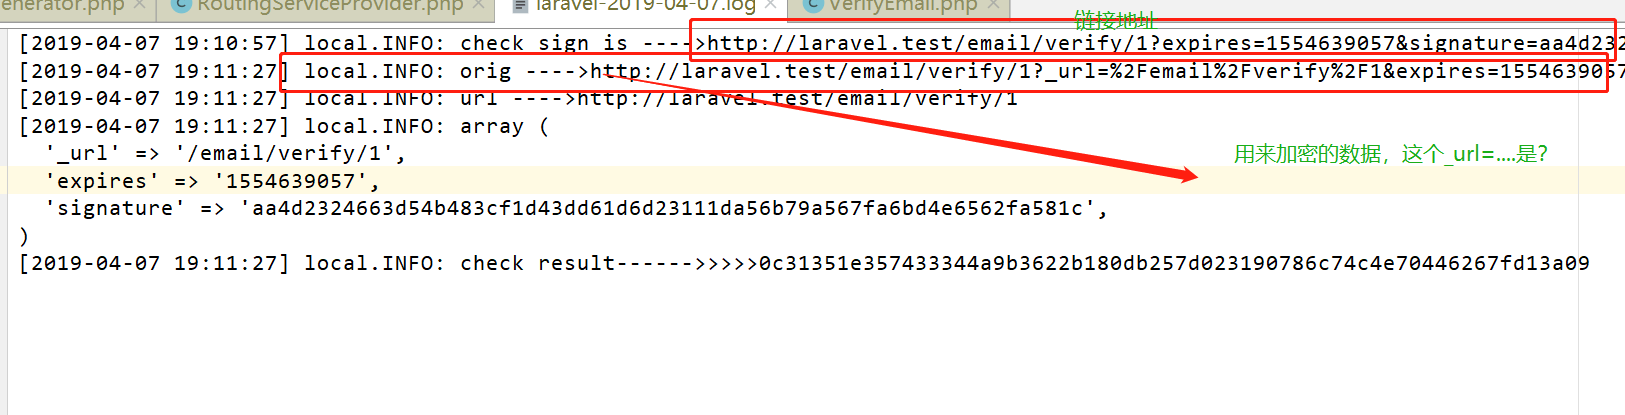 邮箱认证章节从邮件中获取链接 url，访问返回 403Forbidden